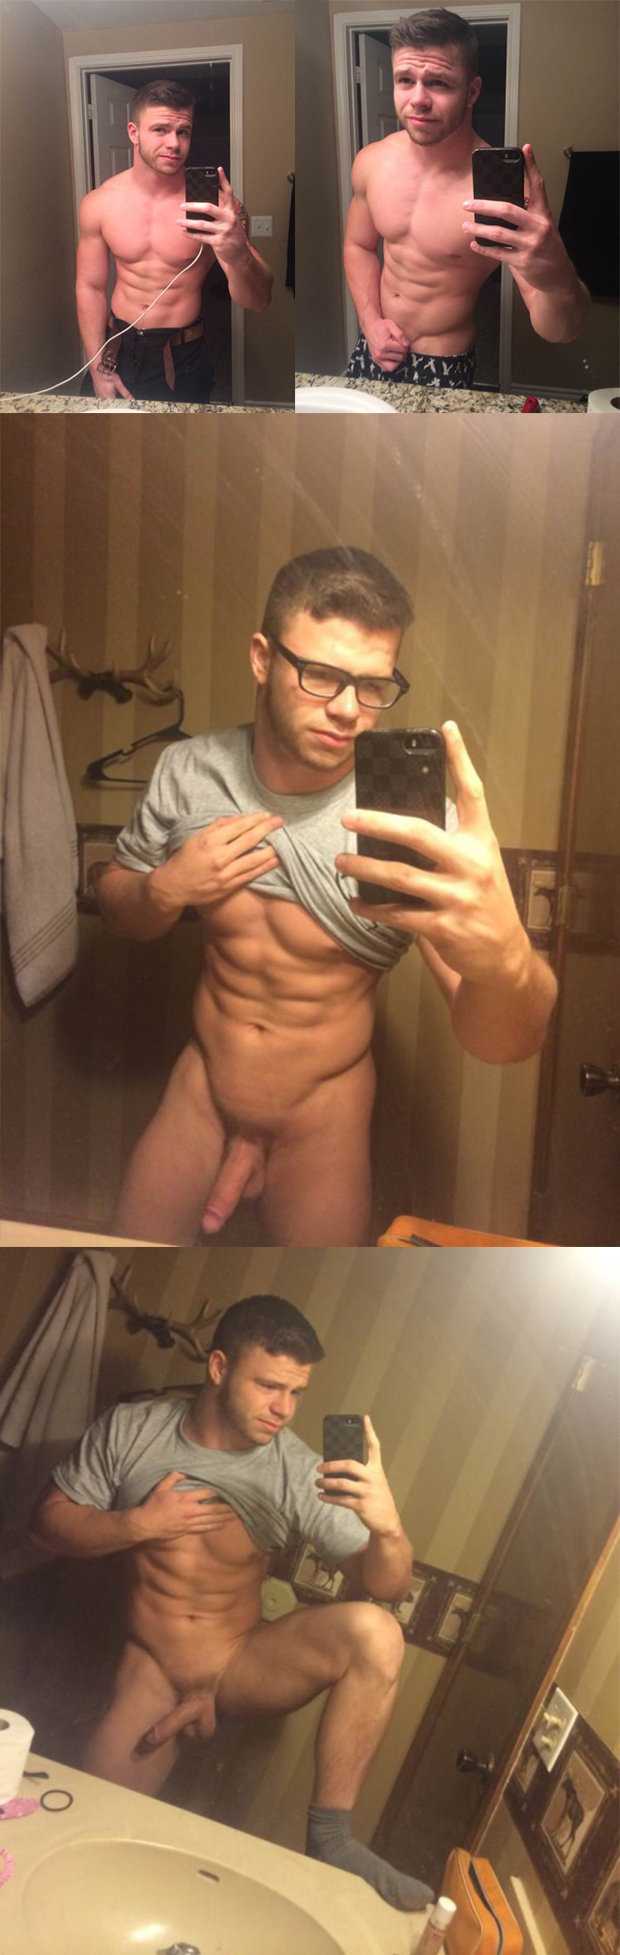 nude muscled guy selfie